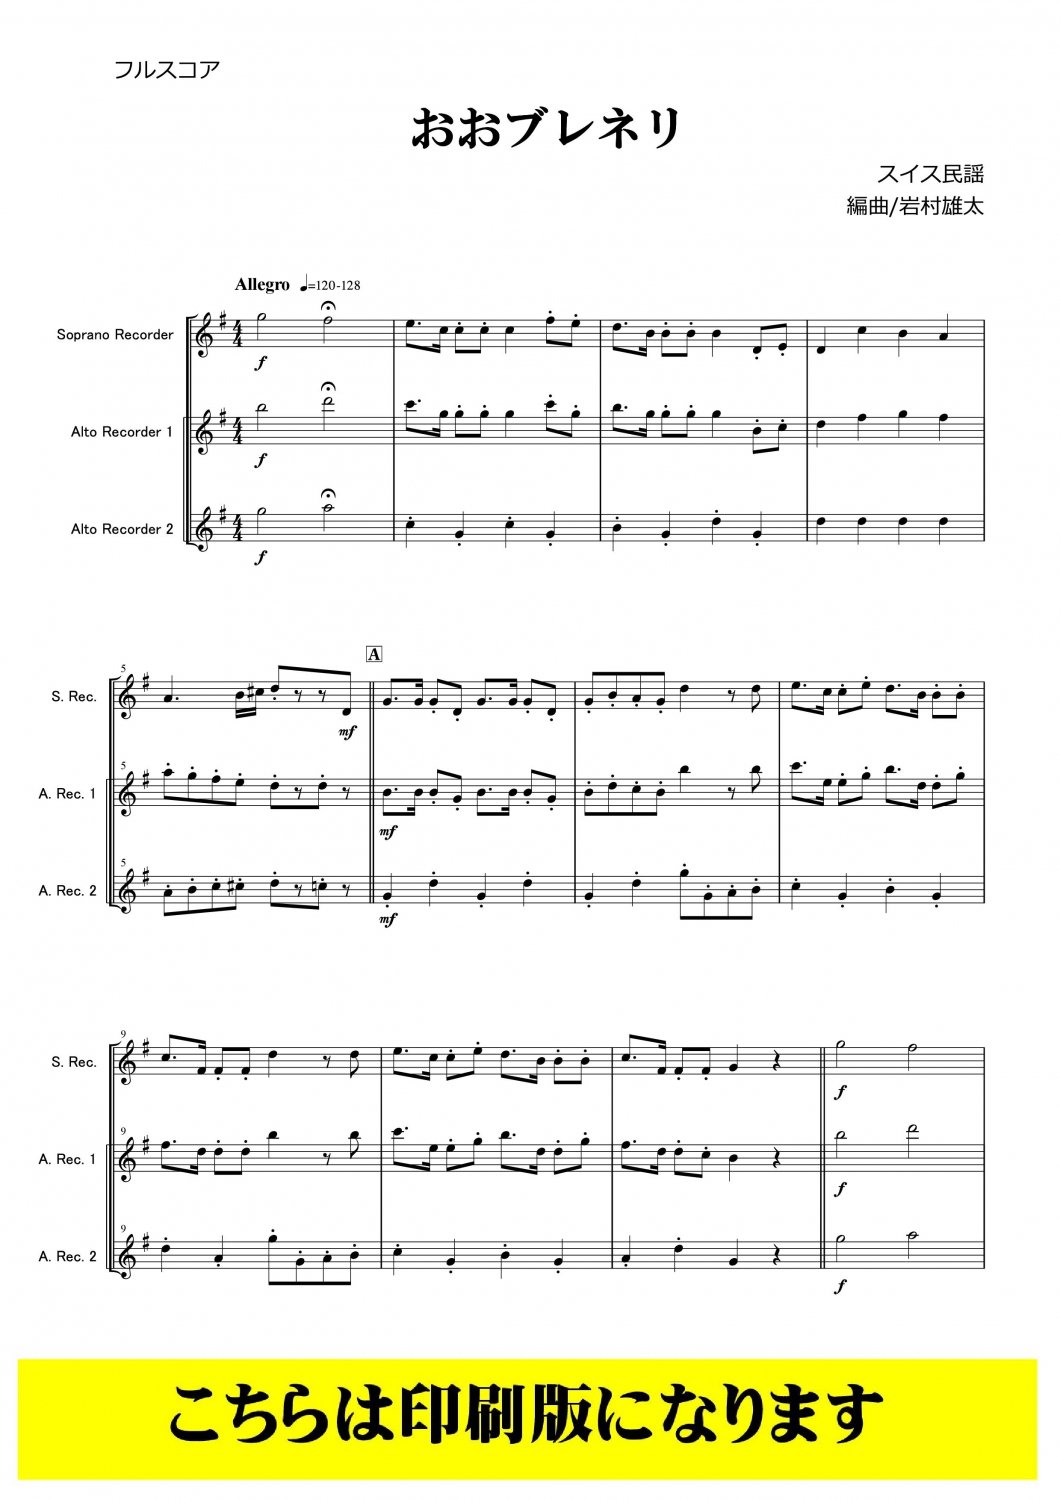 リコーダー３重奏-アンサンブル楽譜] おおブレネリ(スイス民謡 arr. 岩村雄太) CLGR3-001「コラージュ音楽出版」最新ポップスをリコーダー譜 に本格アレンジ♪